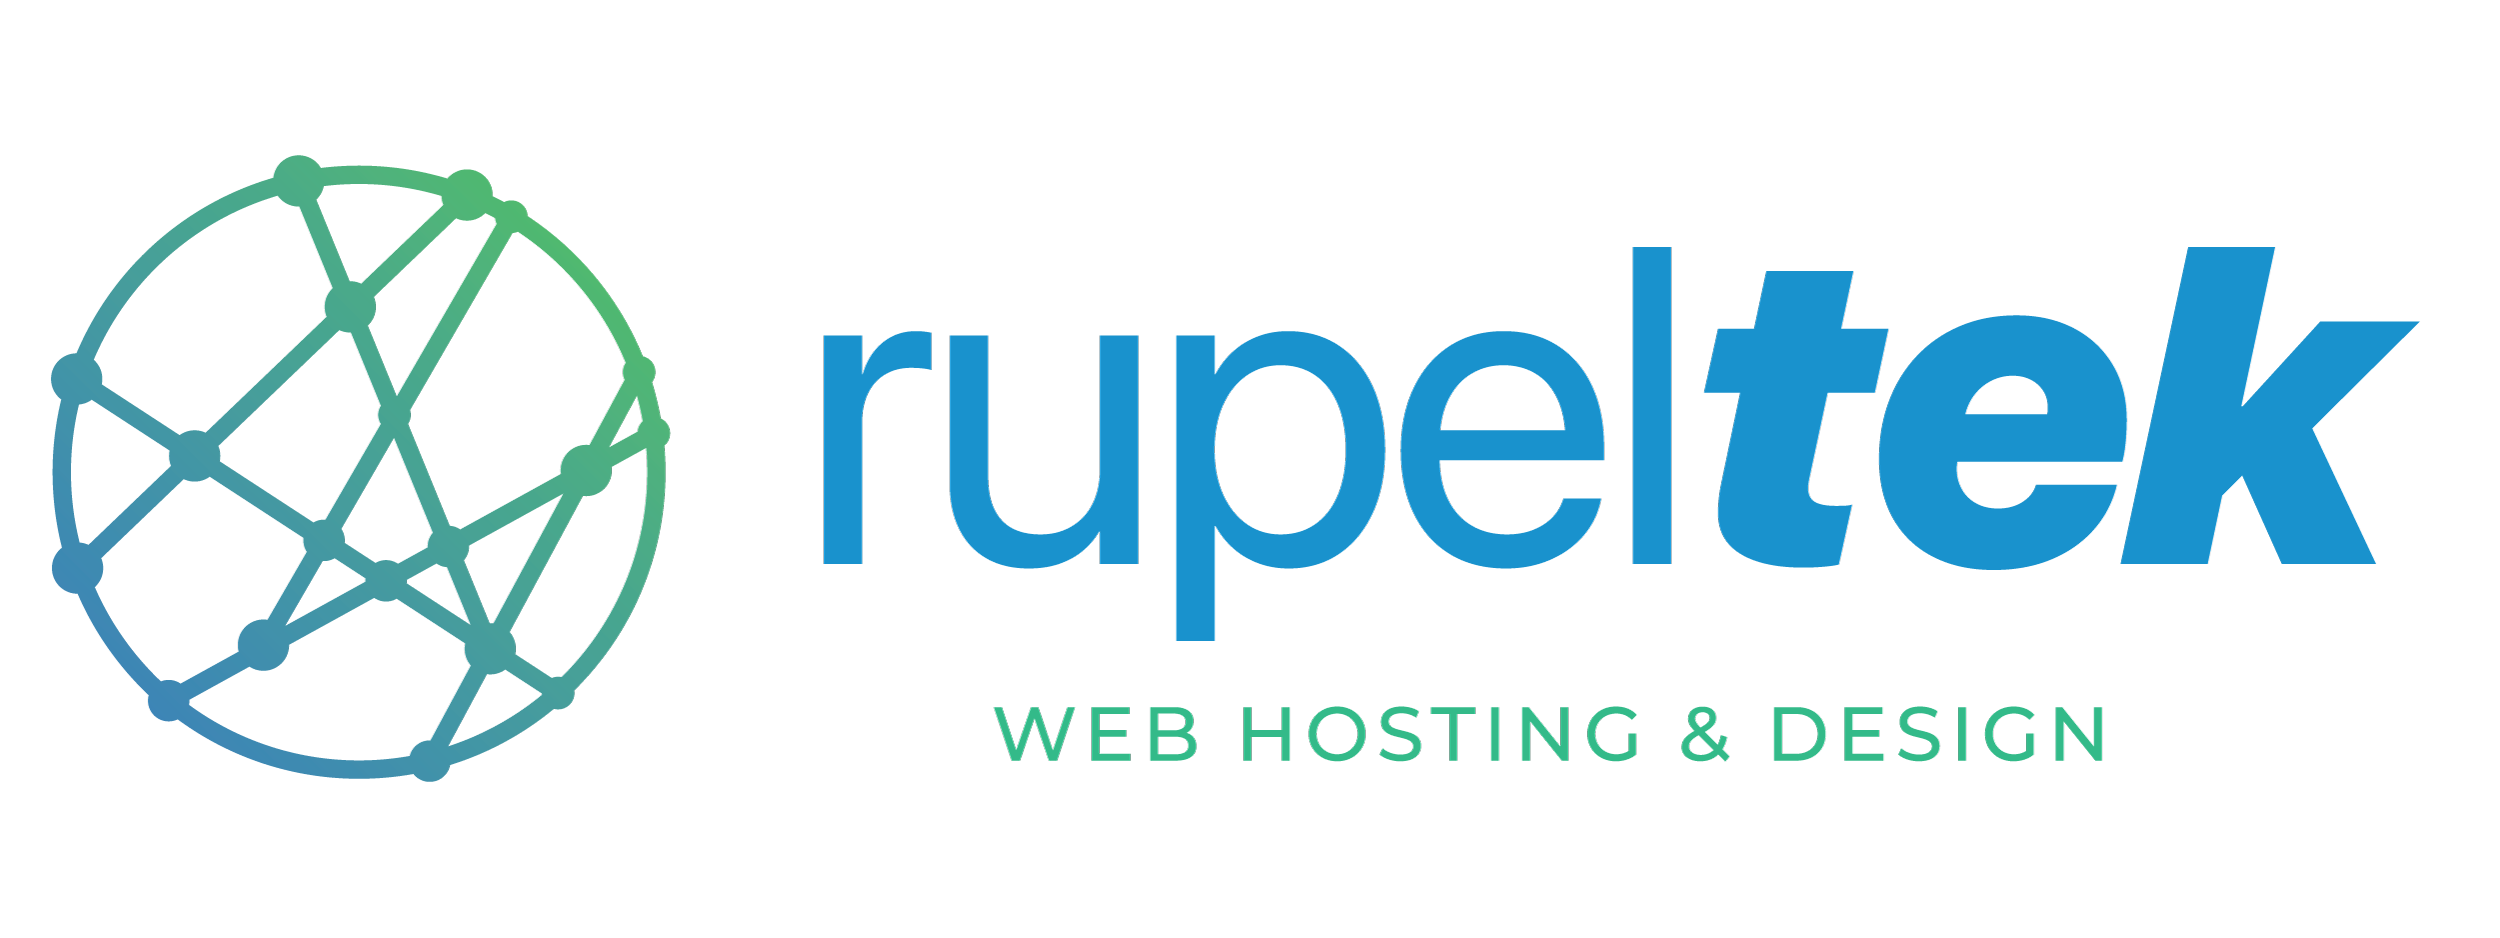 RupelTek logo horizontal large